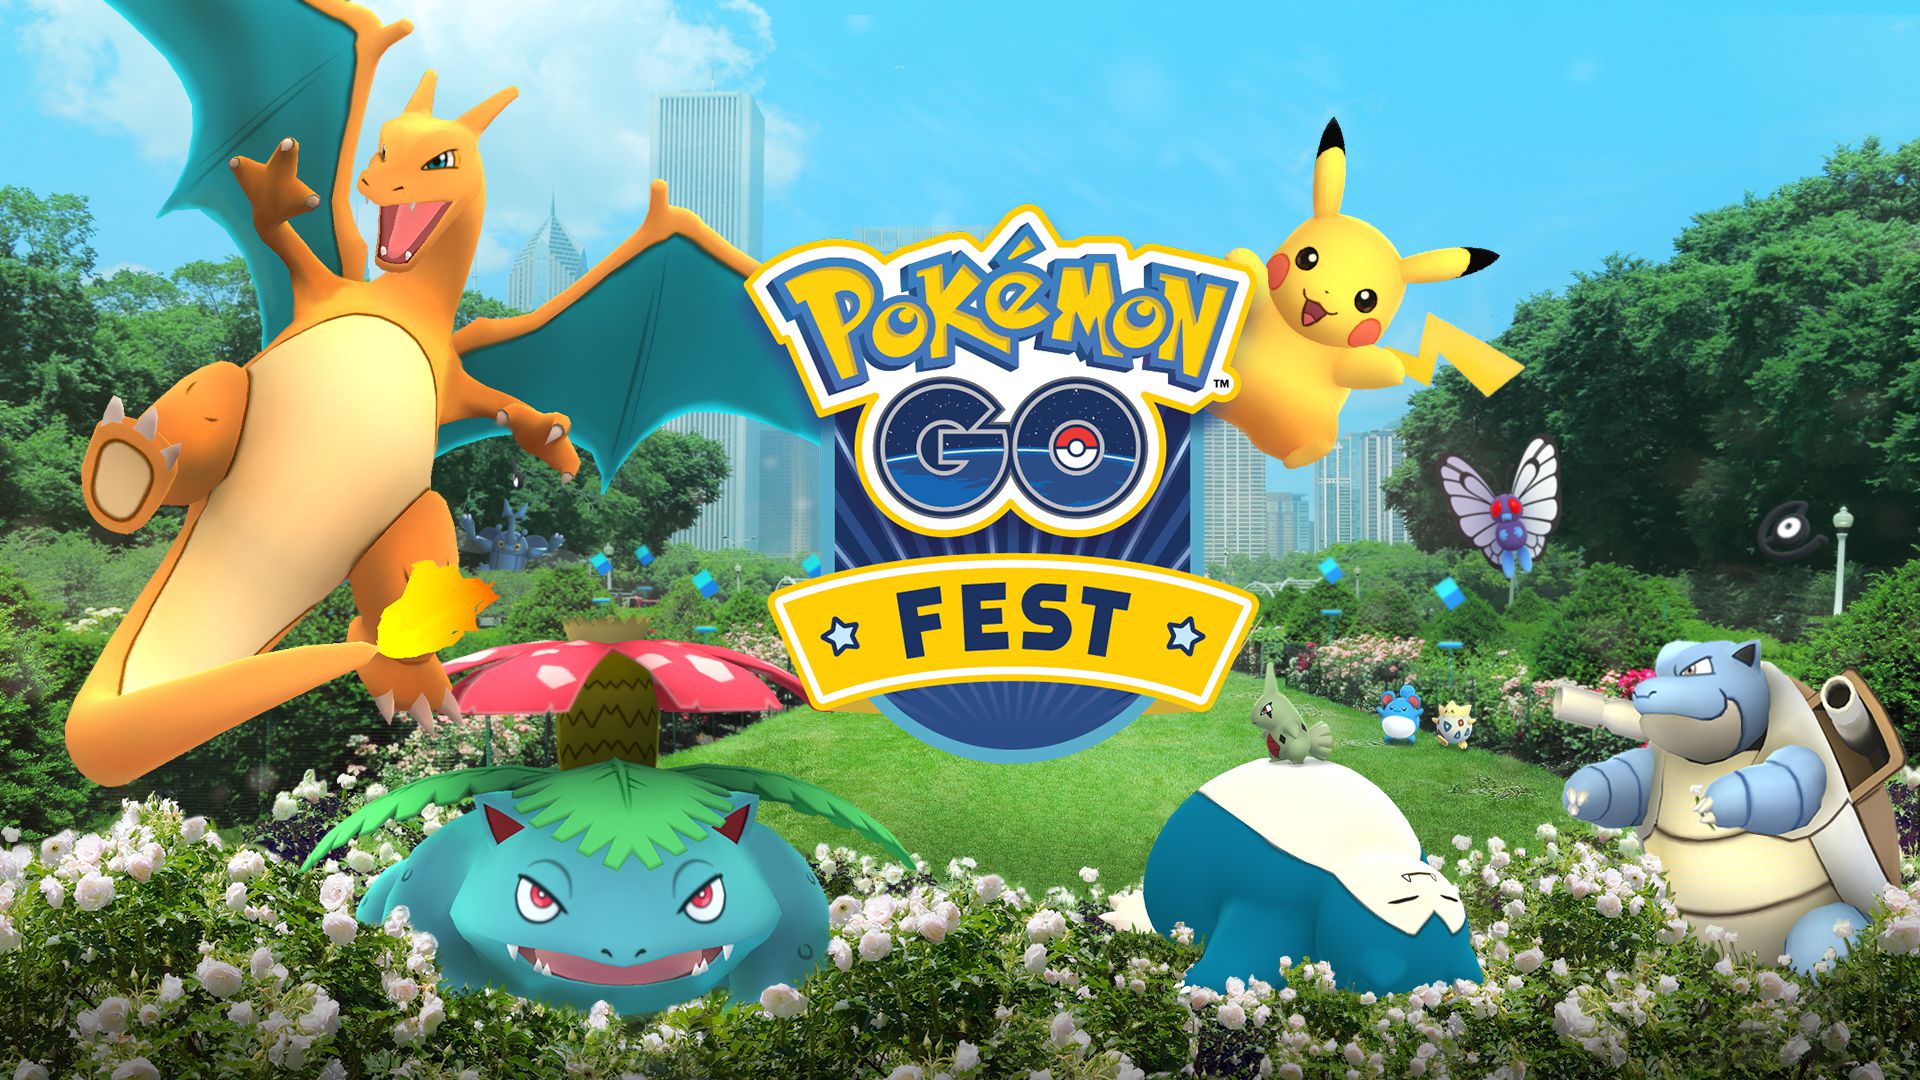 Celebração do Campeonato Mundial 2022 no Pokémon GO